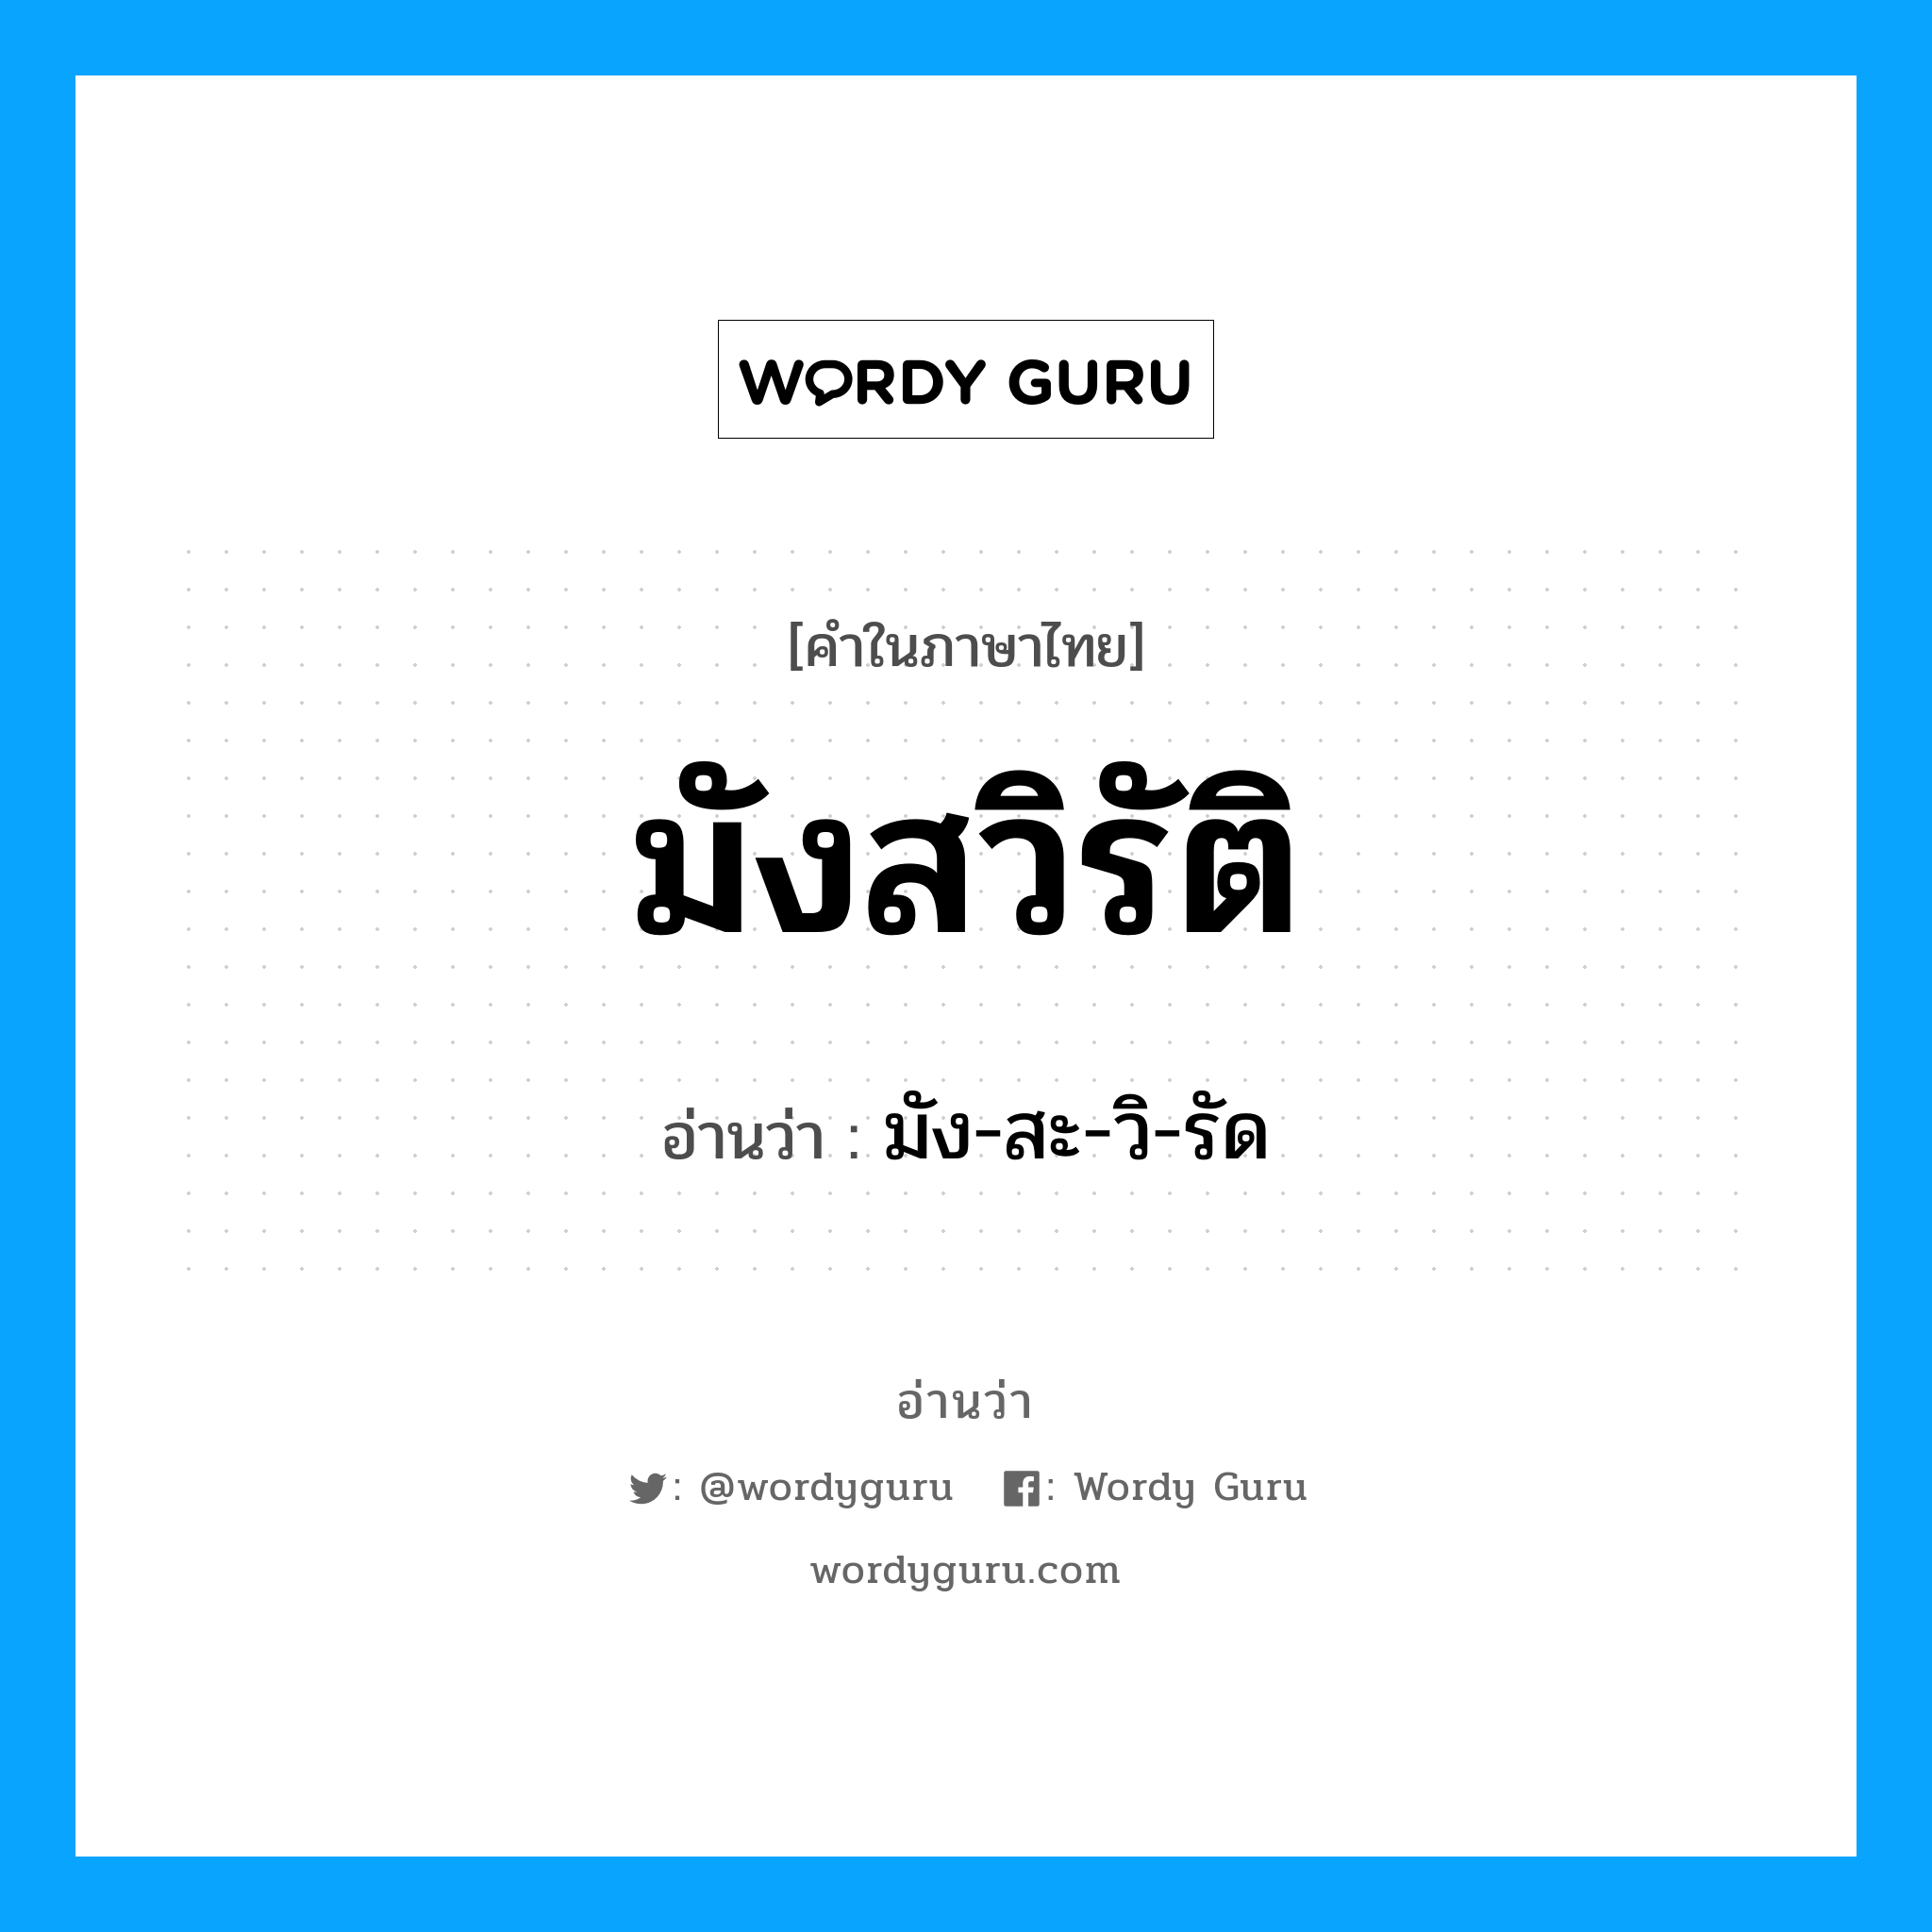 มัง-สะ-วิ-รัด เป็นคำอ่านของคำไหน?, คำในภาษาไทย มัง-สะ-วิ-รัด อ่านว่า มังสวิรัติ หมวด อาหาร หมวด อาหาร